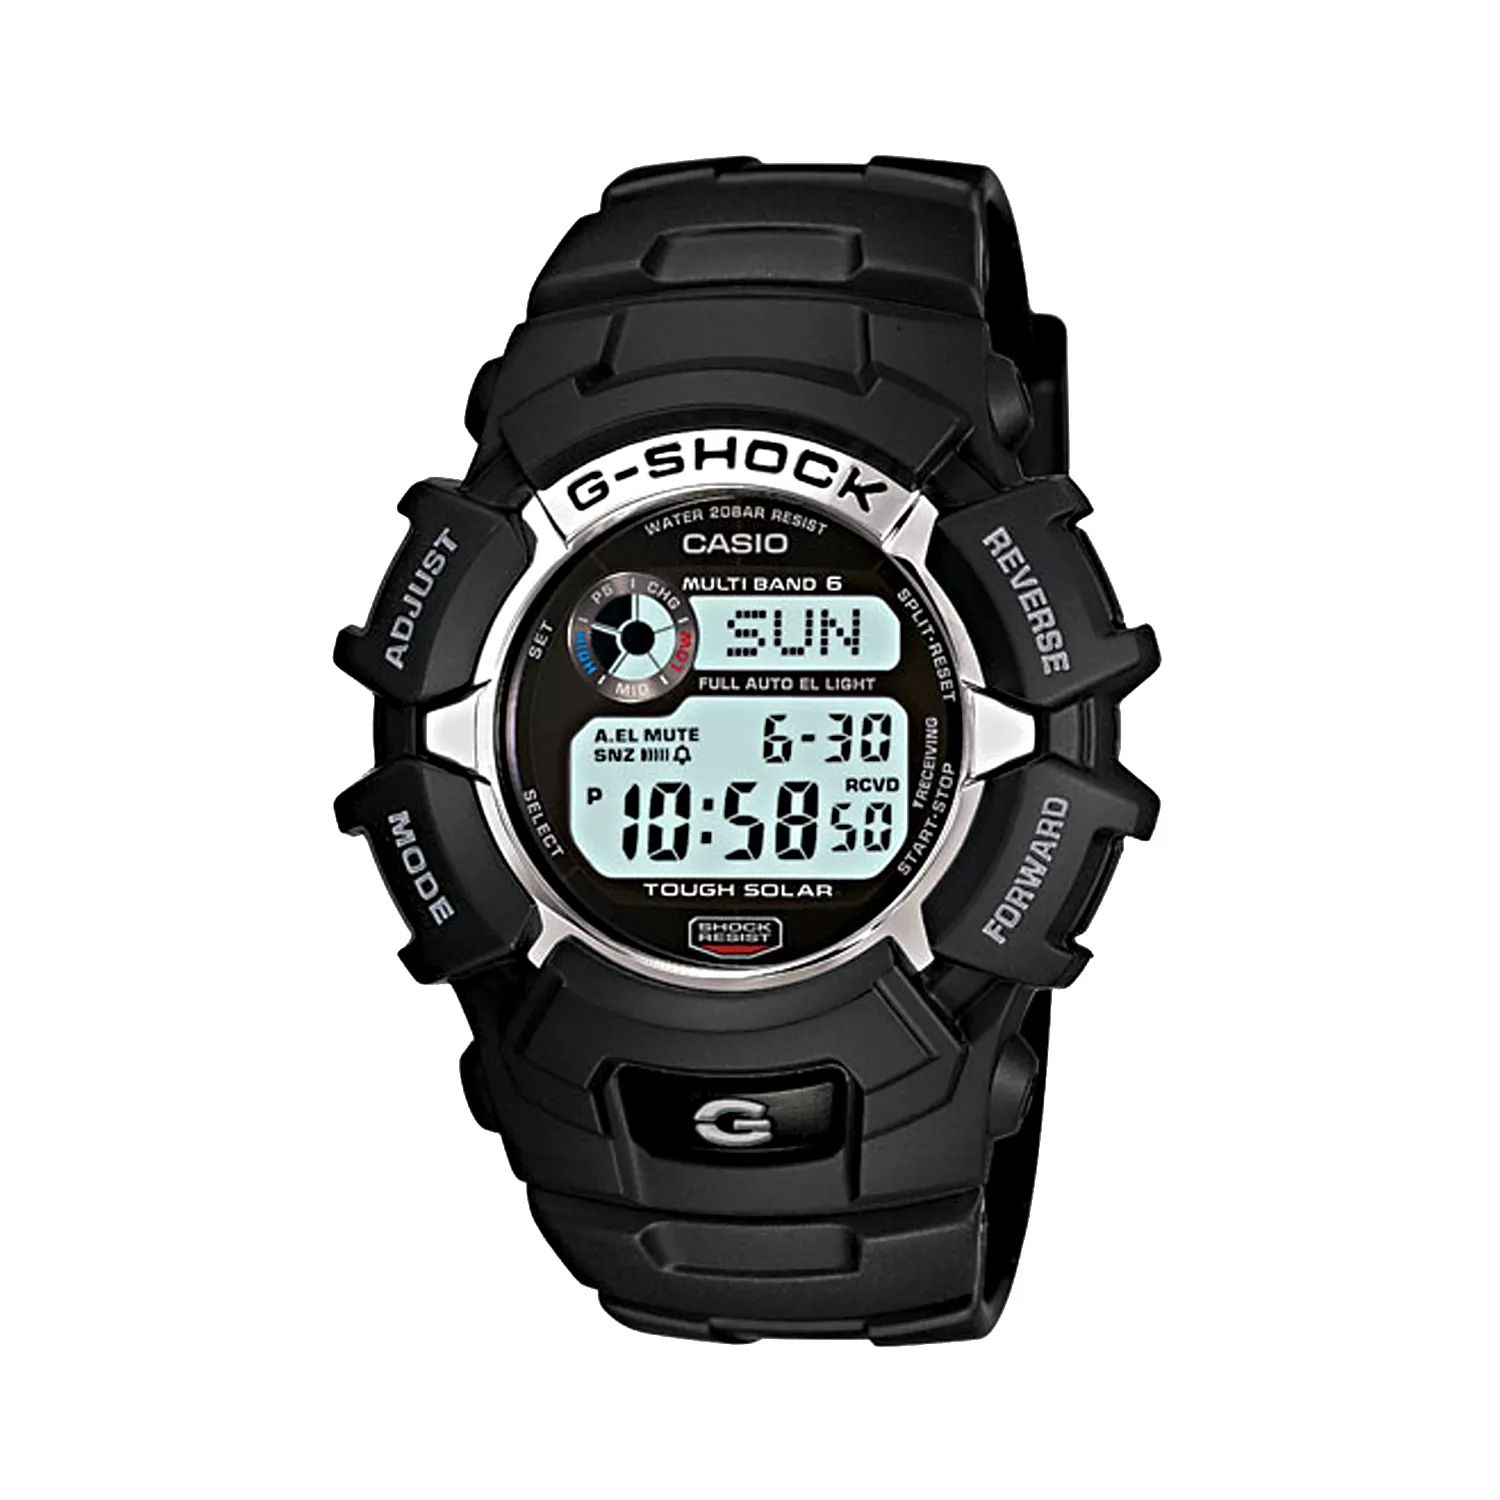 Мужские часы Casio G-Shock Tough Solar с цифровым атомным хронографом - GW2310-1K Relic by Fossil цена и фото